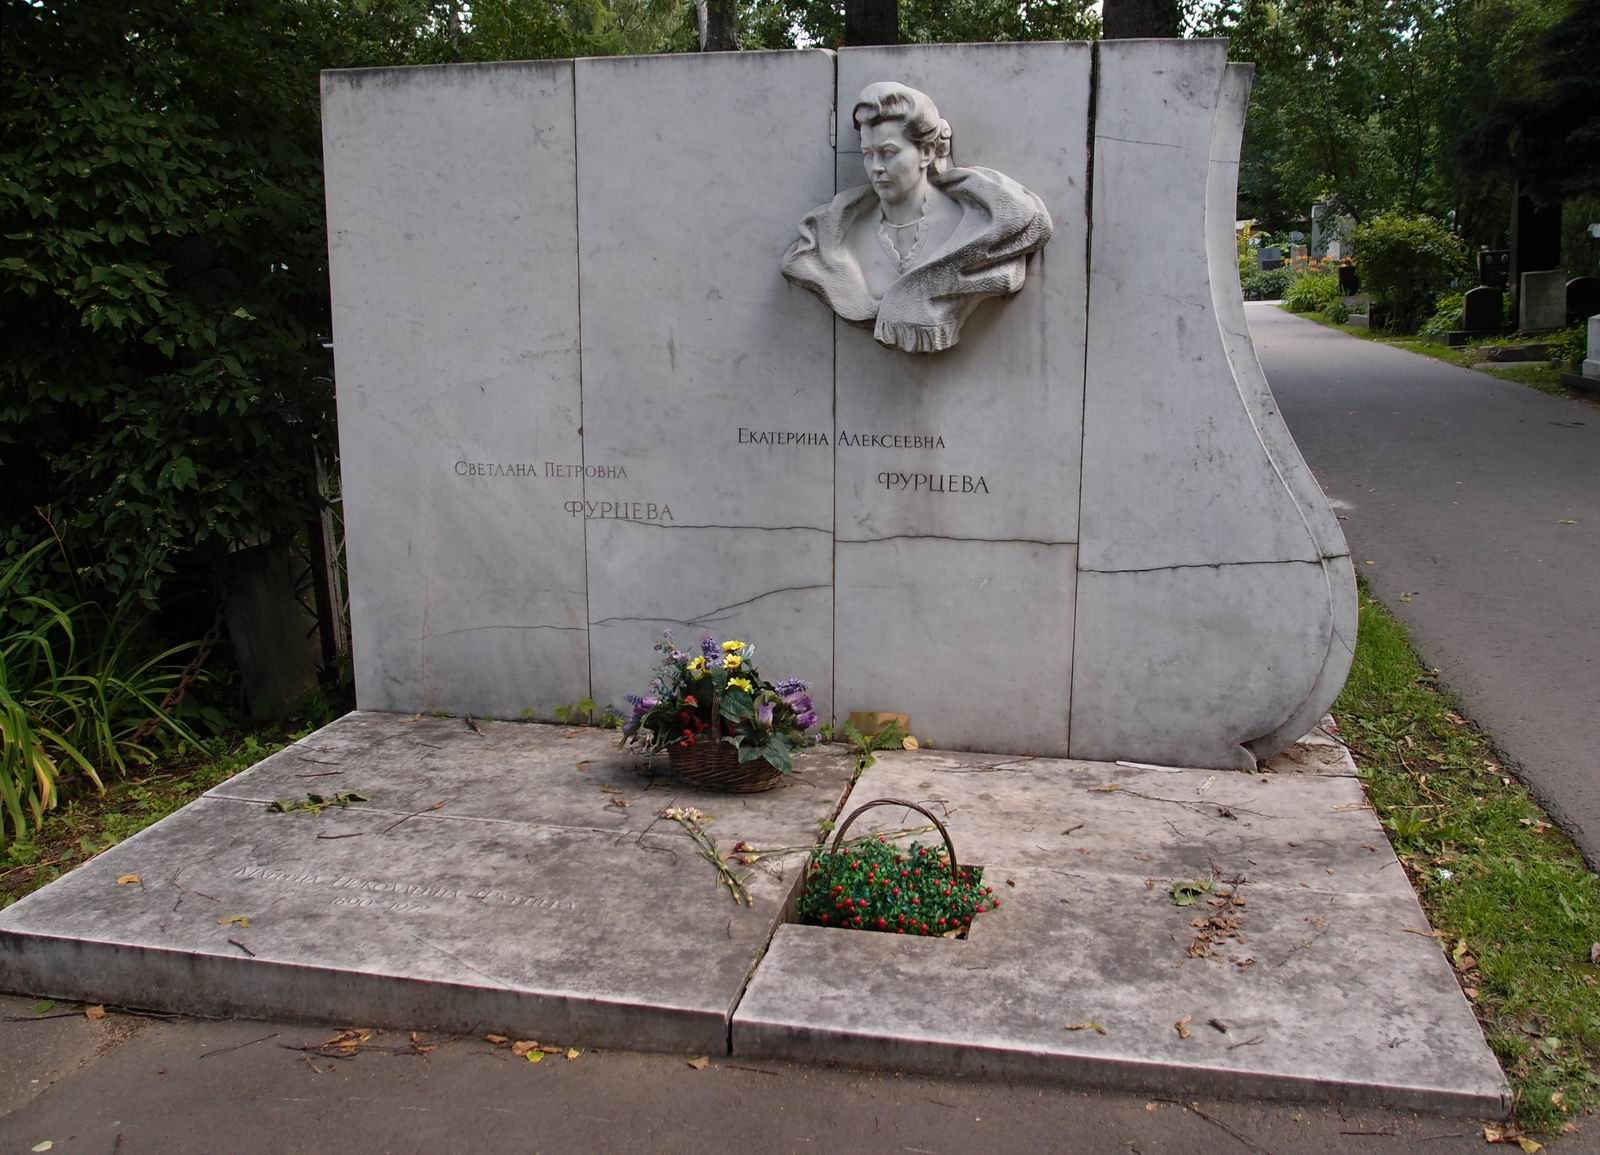 Памятник на могиле Фурцевой Е.А. (1910–1974), ск. Л.Кербель, на Новодевичьем кладбище (3–14–1). Нажмите левую кнопку мыши чтобы увидеть фрагмент памятника.